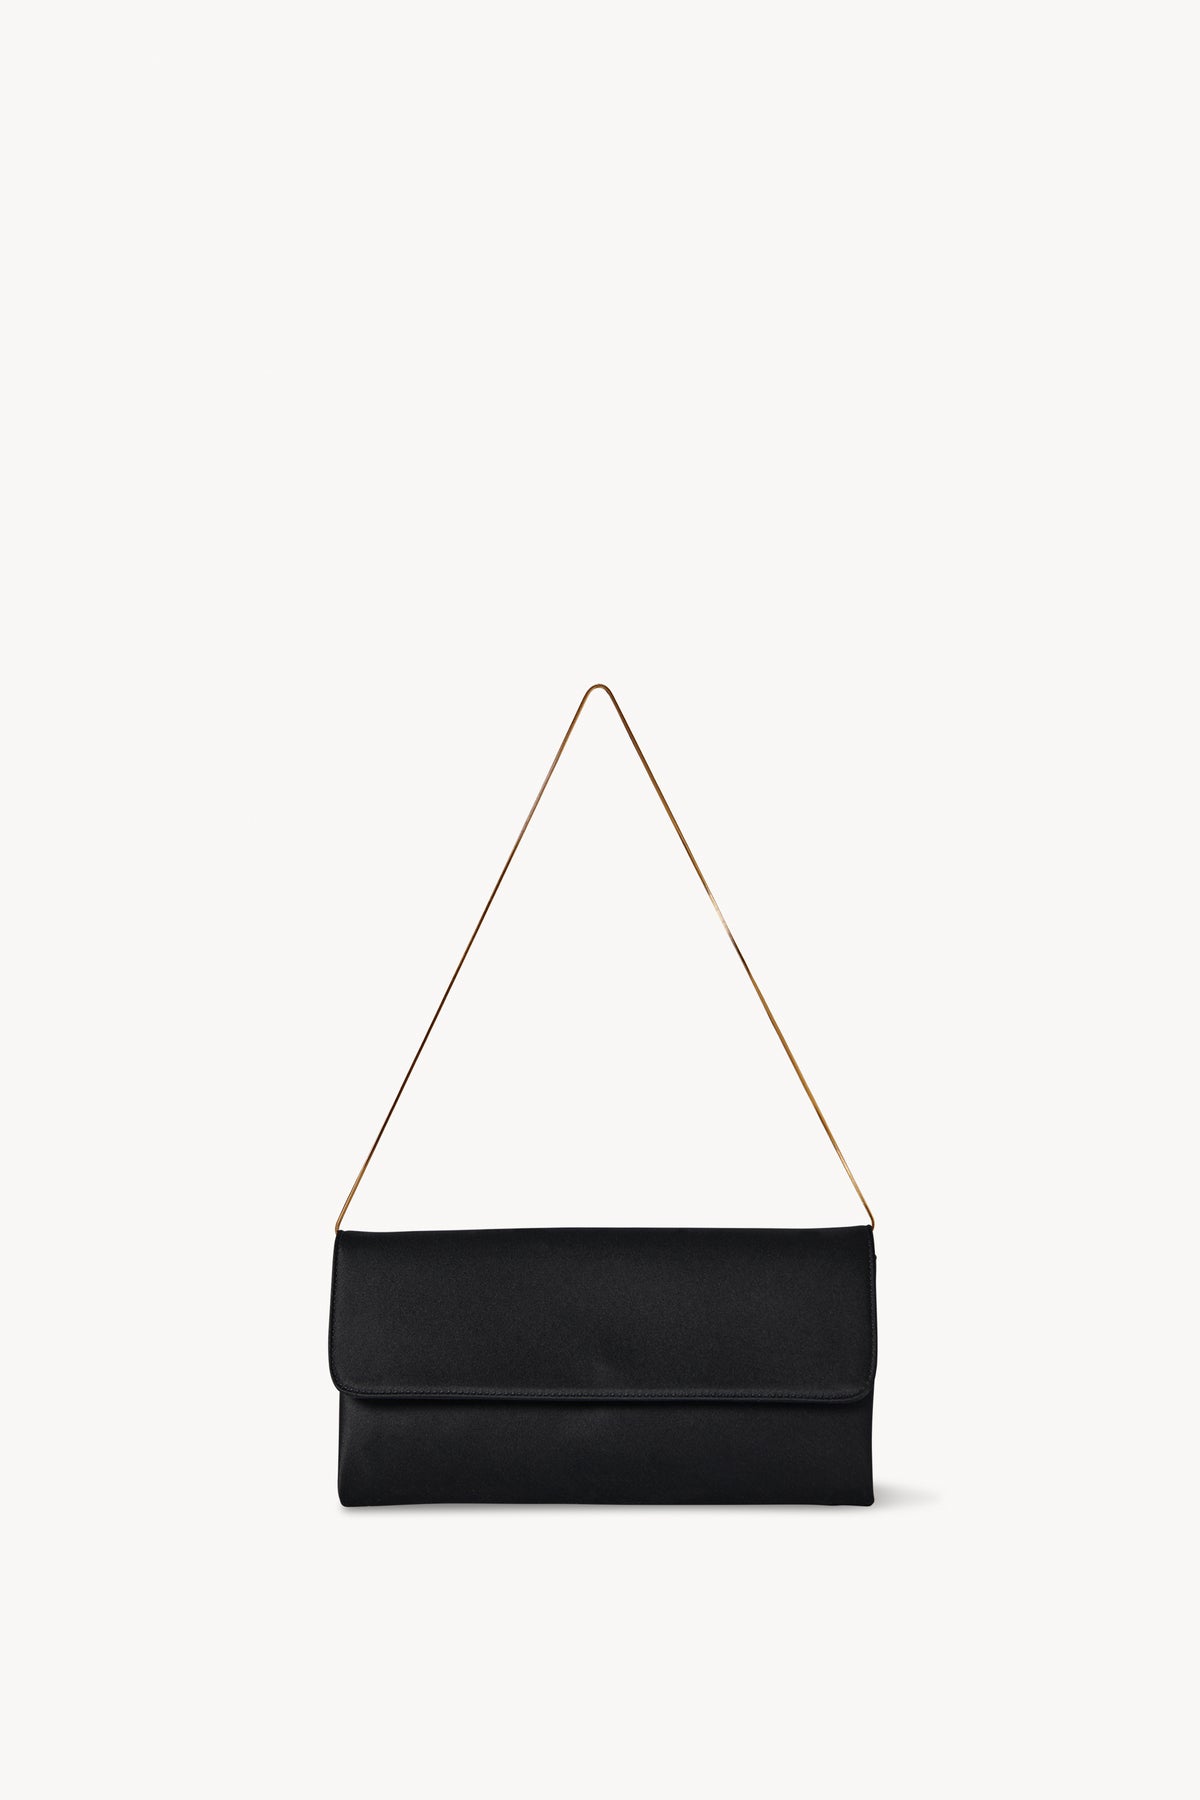 Black evening bag with shoulder strap